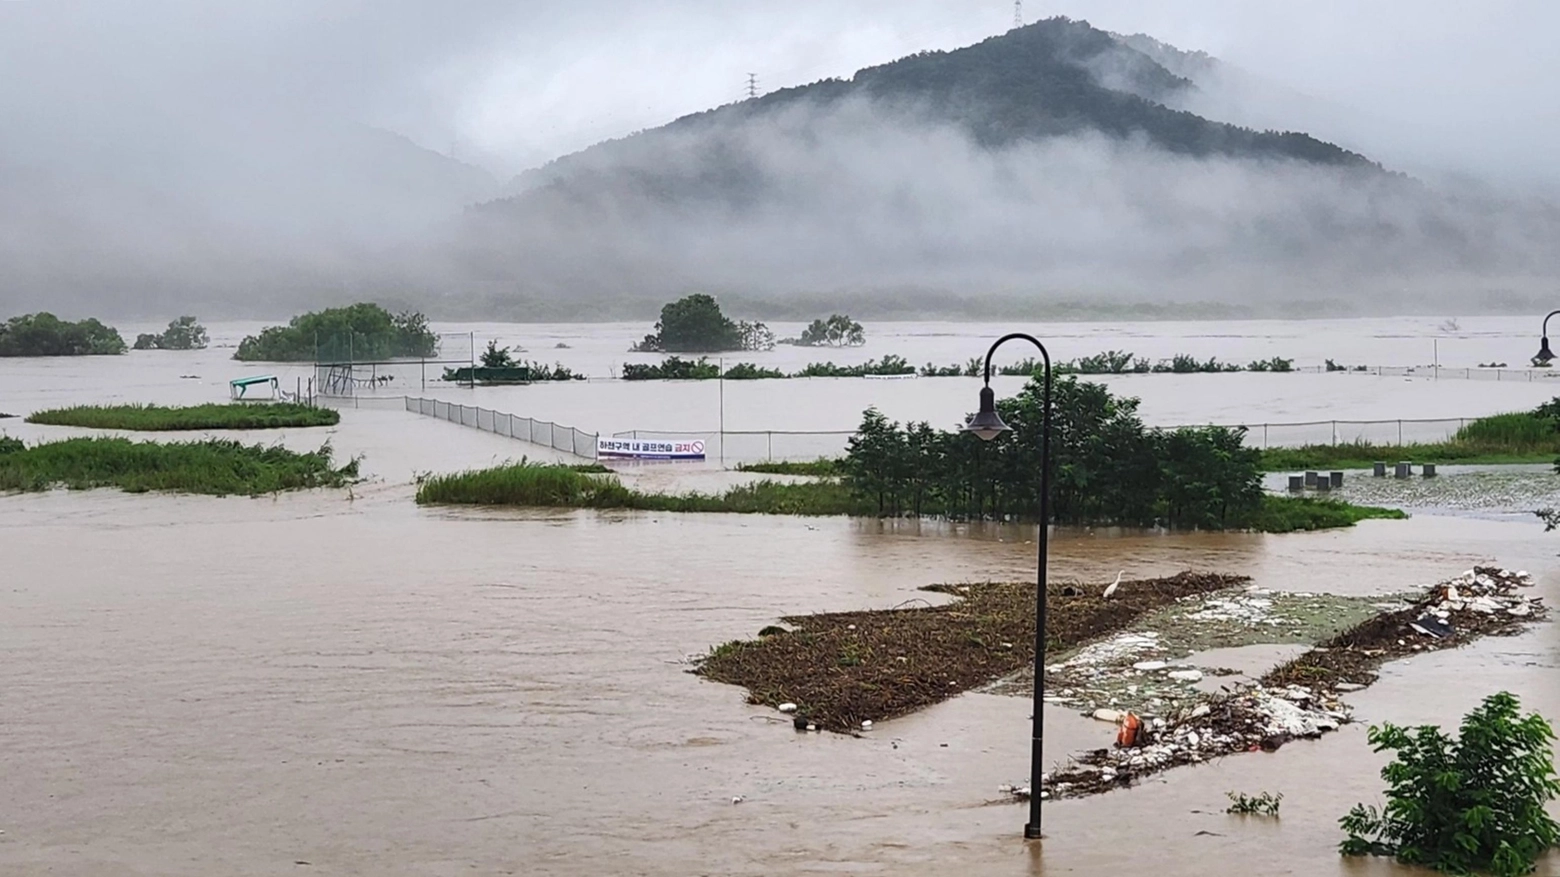 Piogge torrenziali in Corea del Sud, 7 morti e 3 dispersi